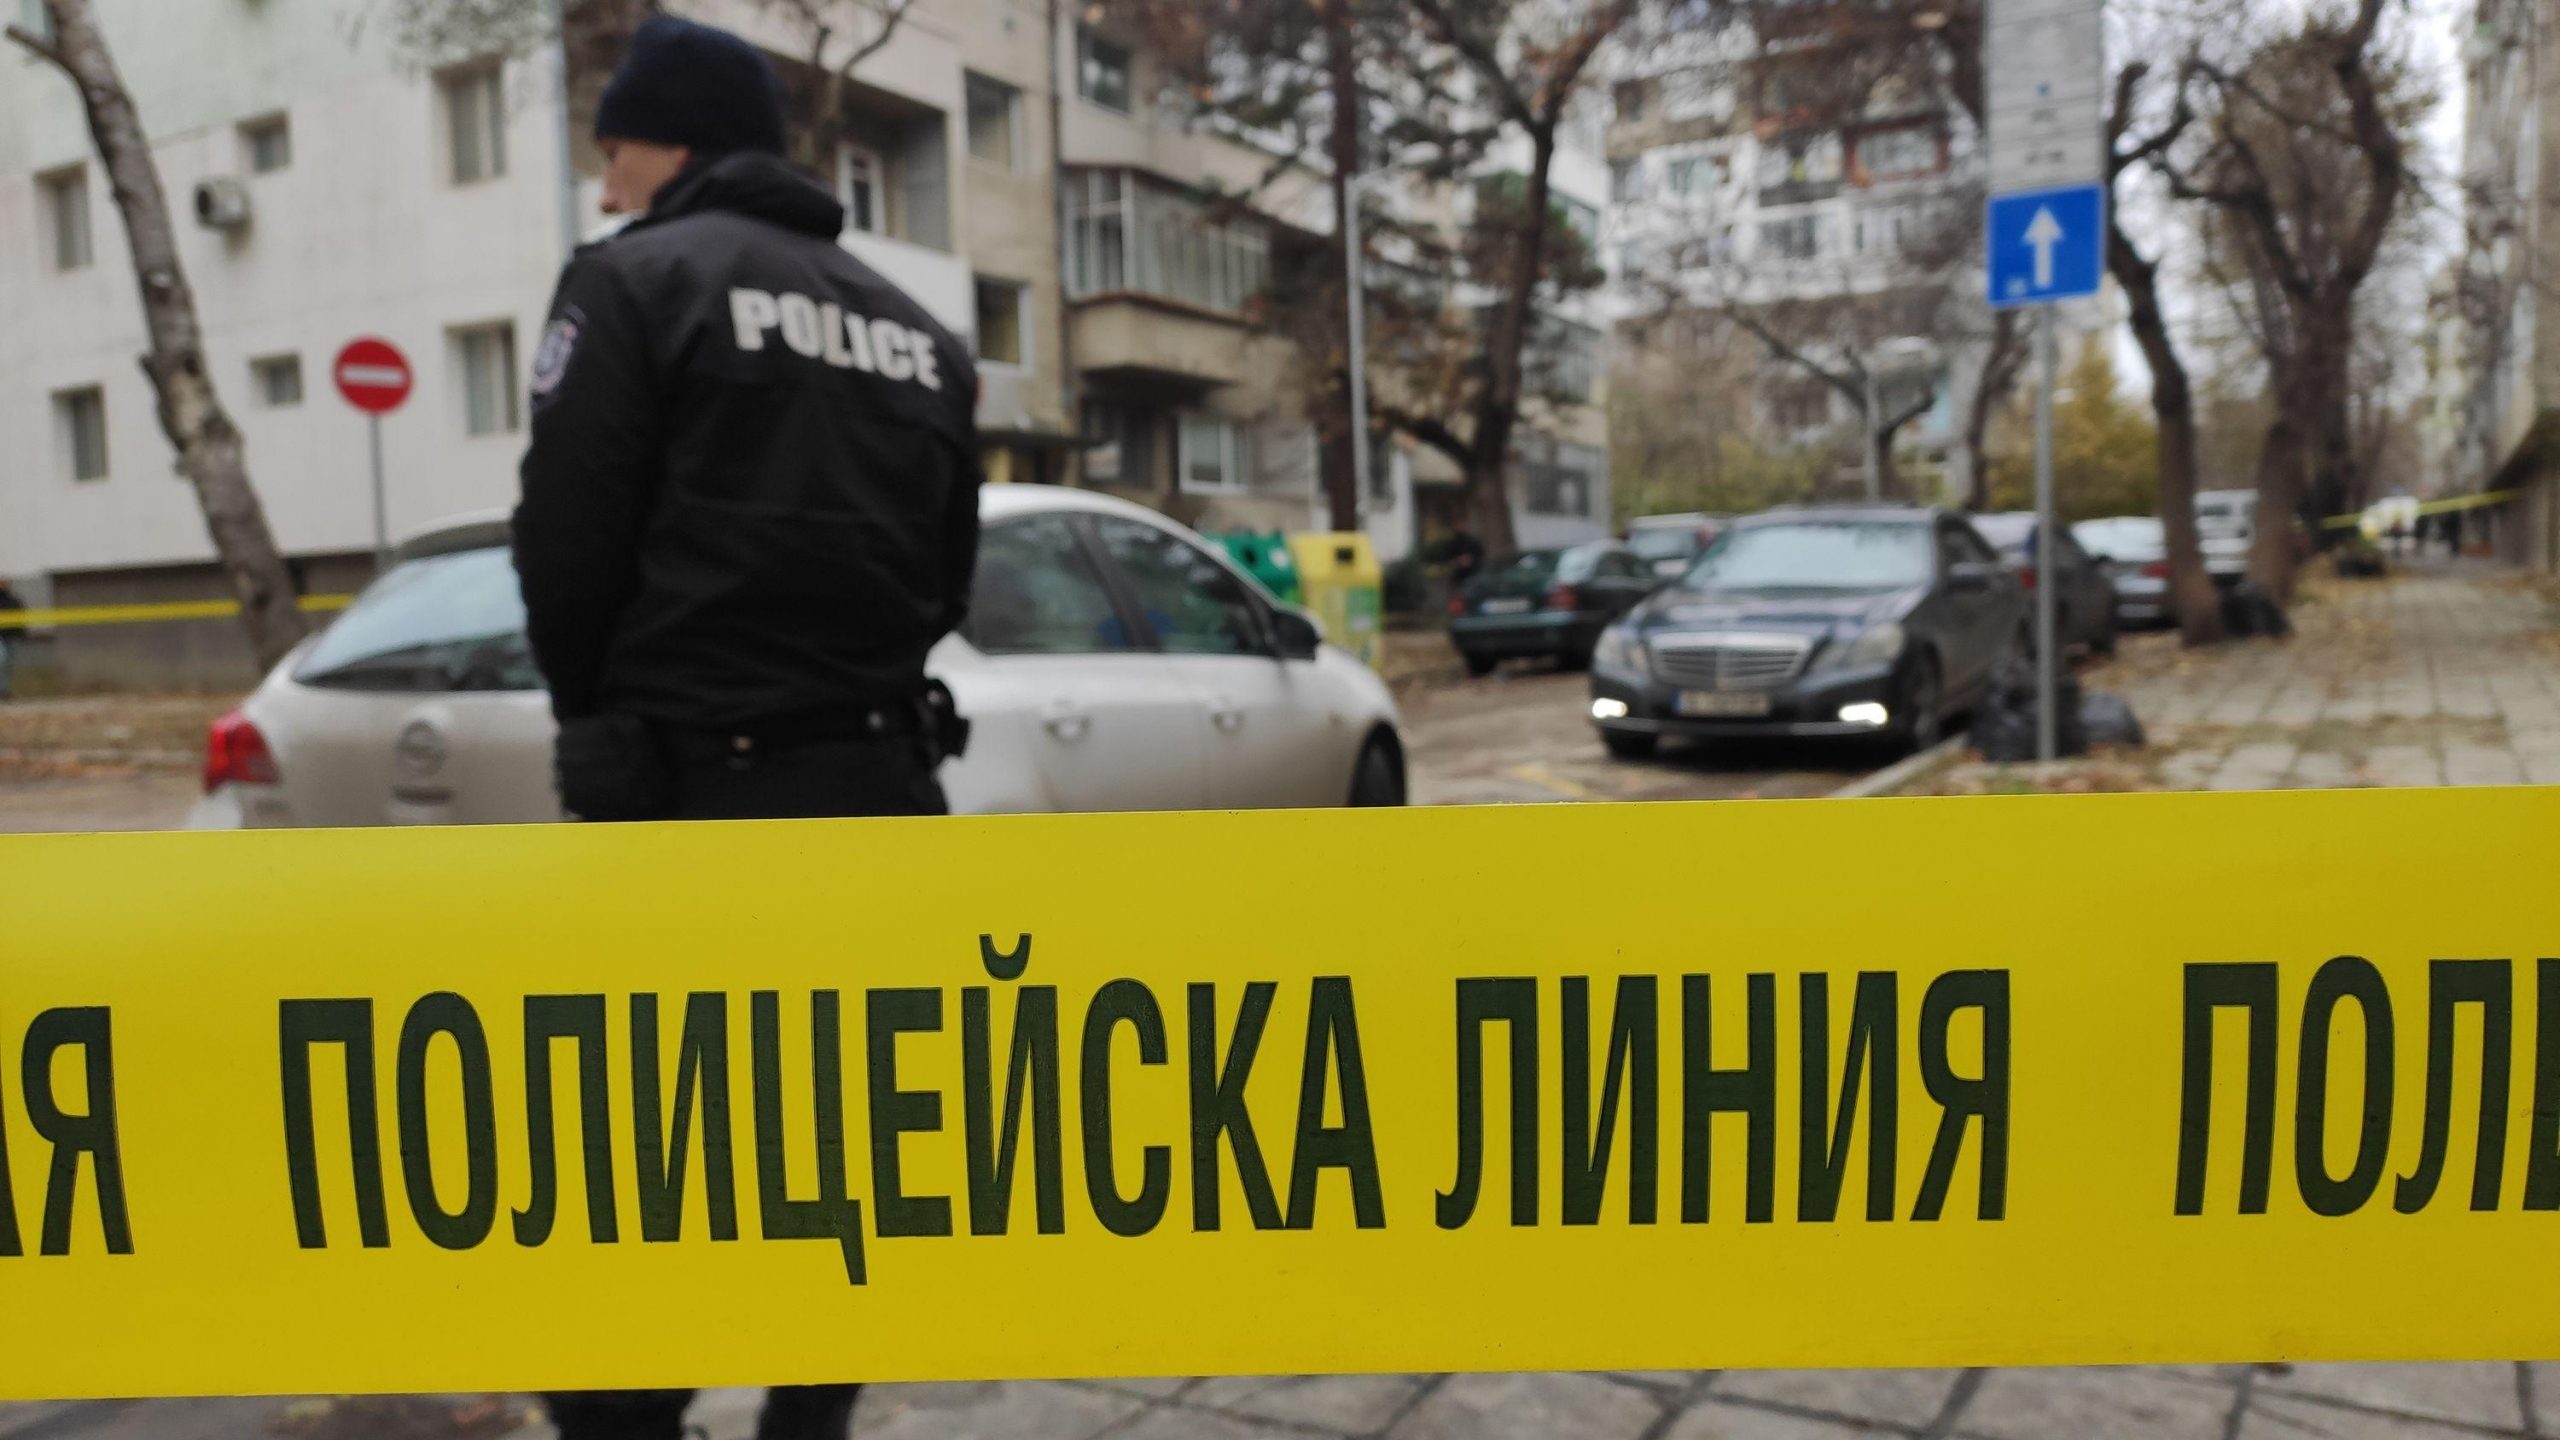 Син който употребява наркотици уби майка си вкъщи в Пазарджик